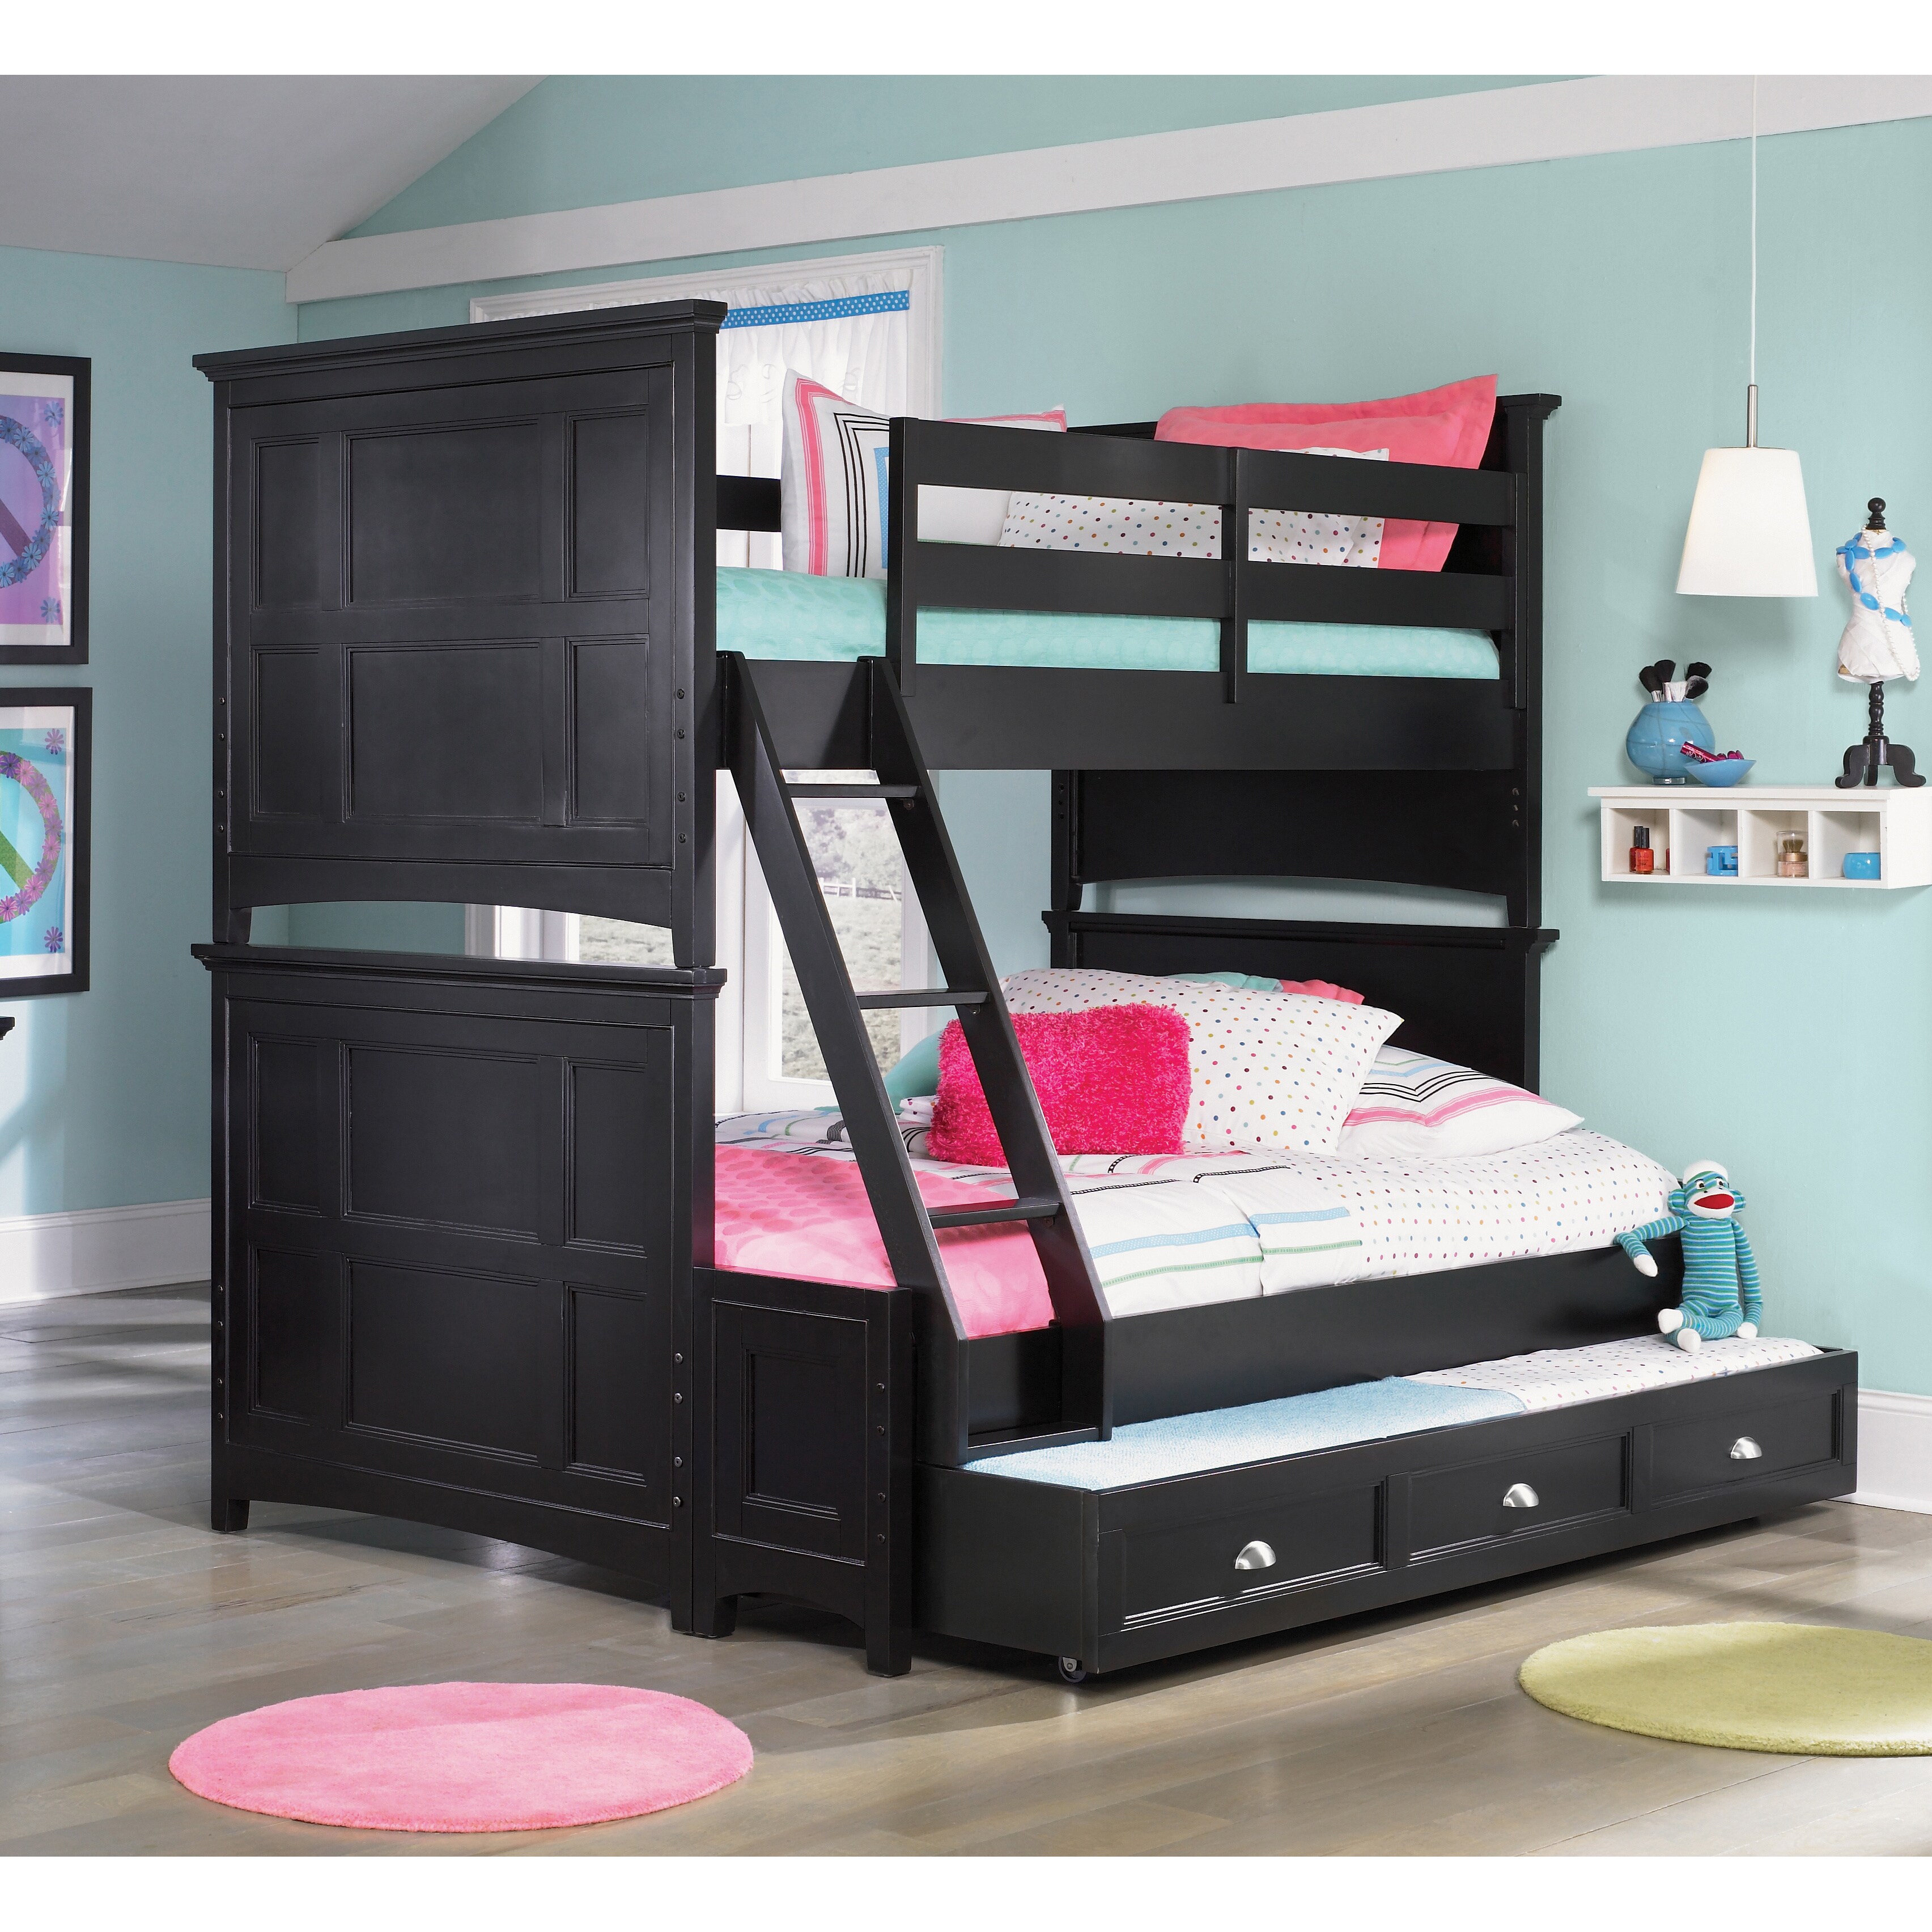 Wood, Twin Beds Buy Bedroom Furniture Online